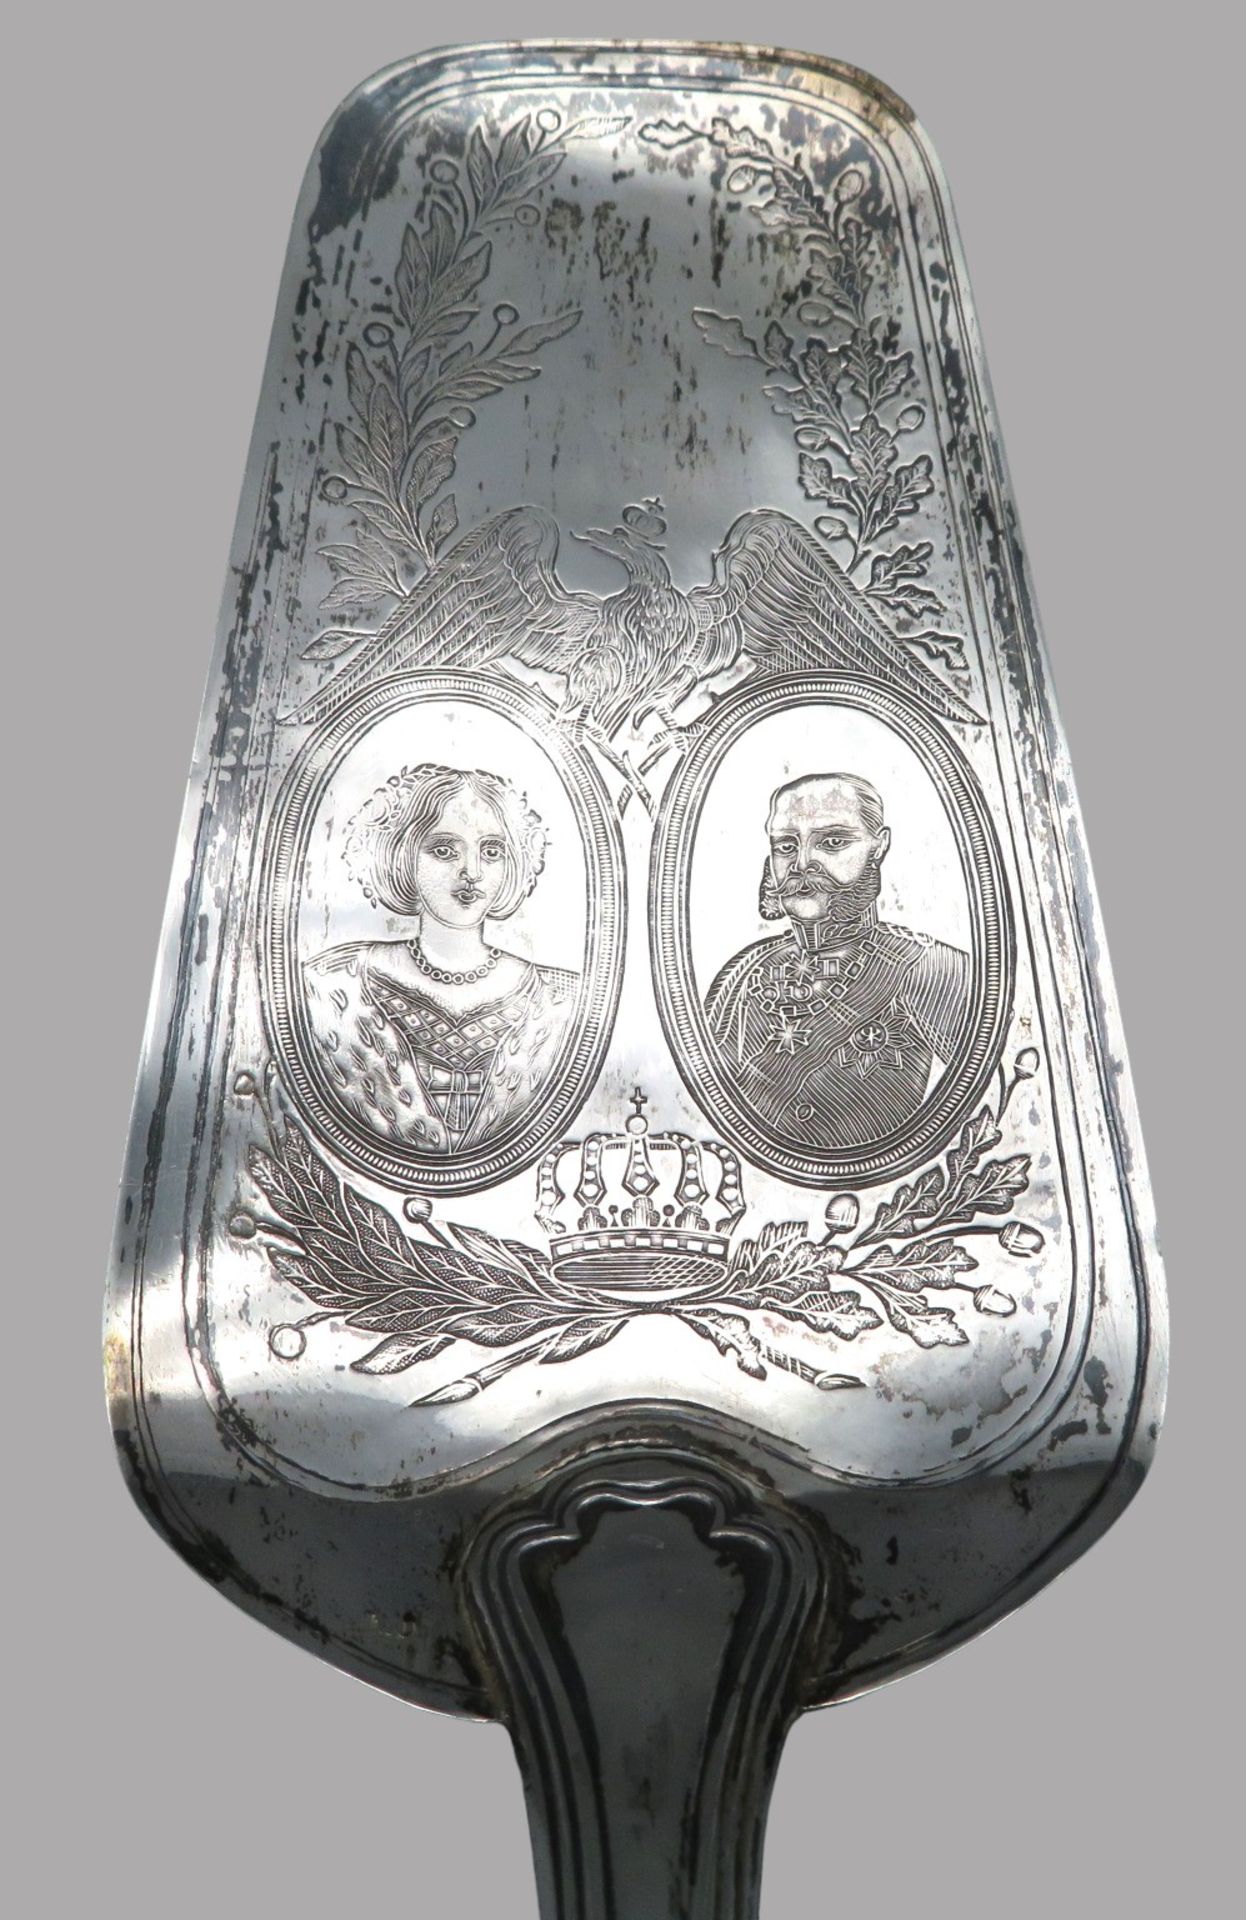 Kuchenschaufel mit Medaillonporträts des Kaiserpaares Franz Joseph I. und Elisabeth (genannt Sissi) - Bild 2 aus 3